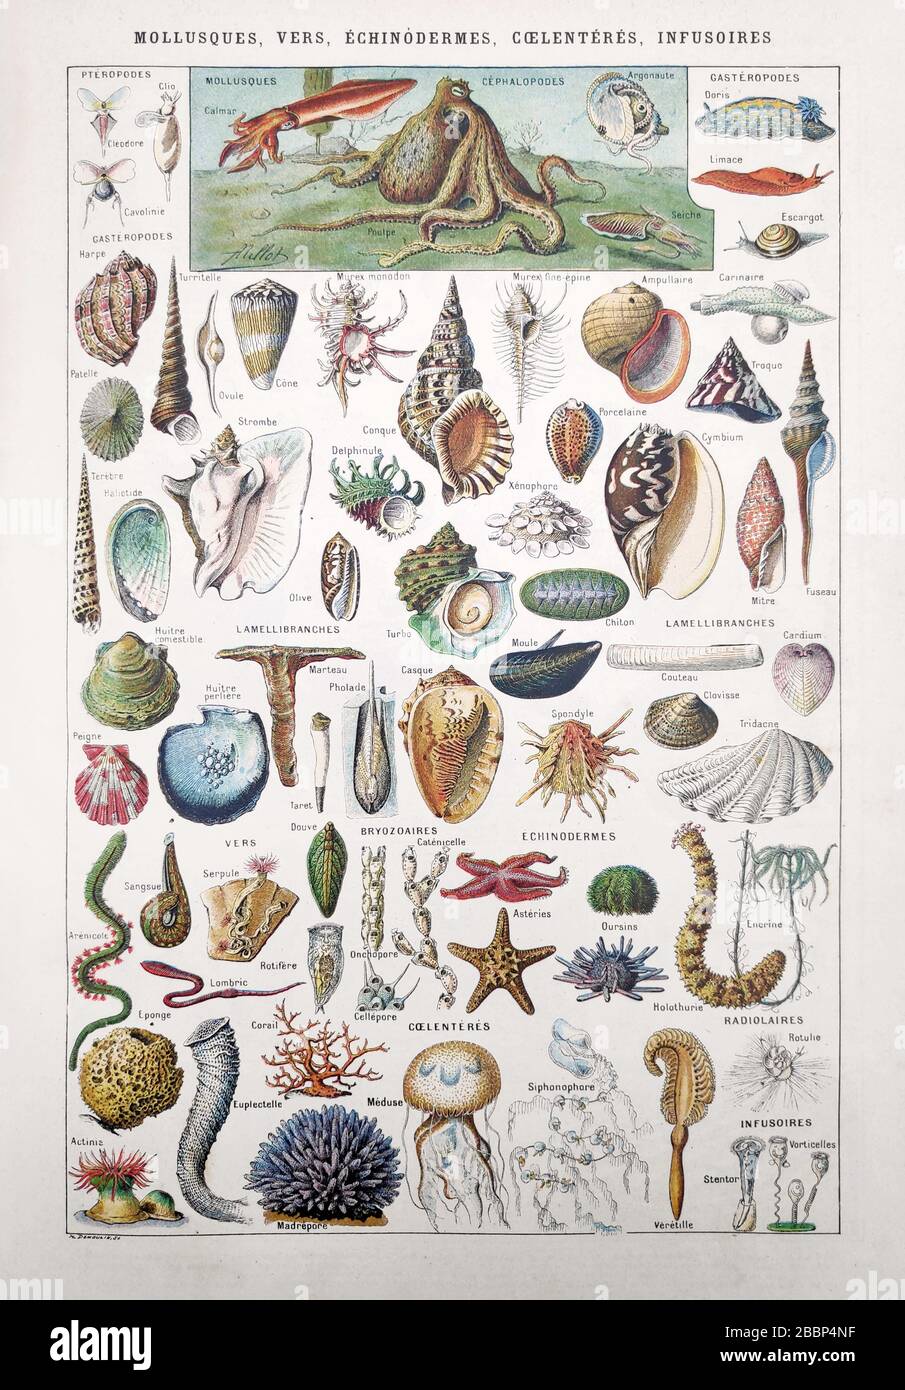 Vecchia illustrazione sulla vita marina (molluschi, vermi, echinodermi, coelenterati e infusoria) di Millot & Demoulin. Foto Stock